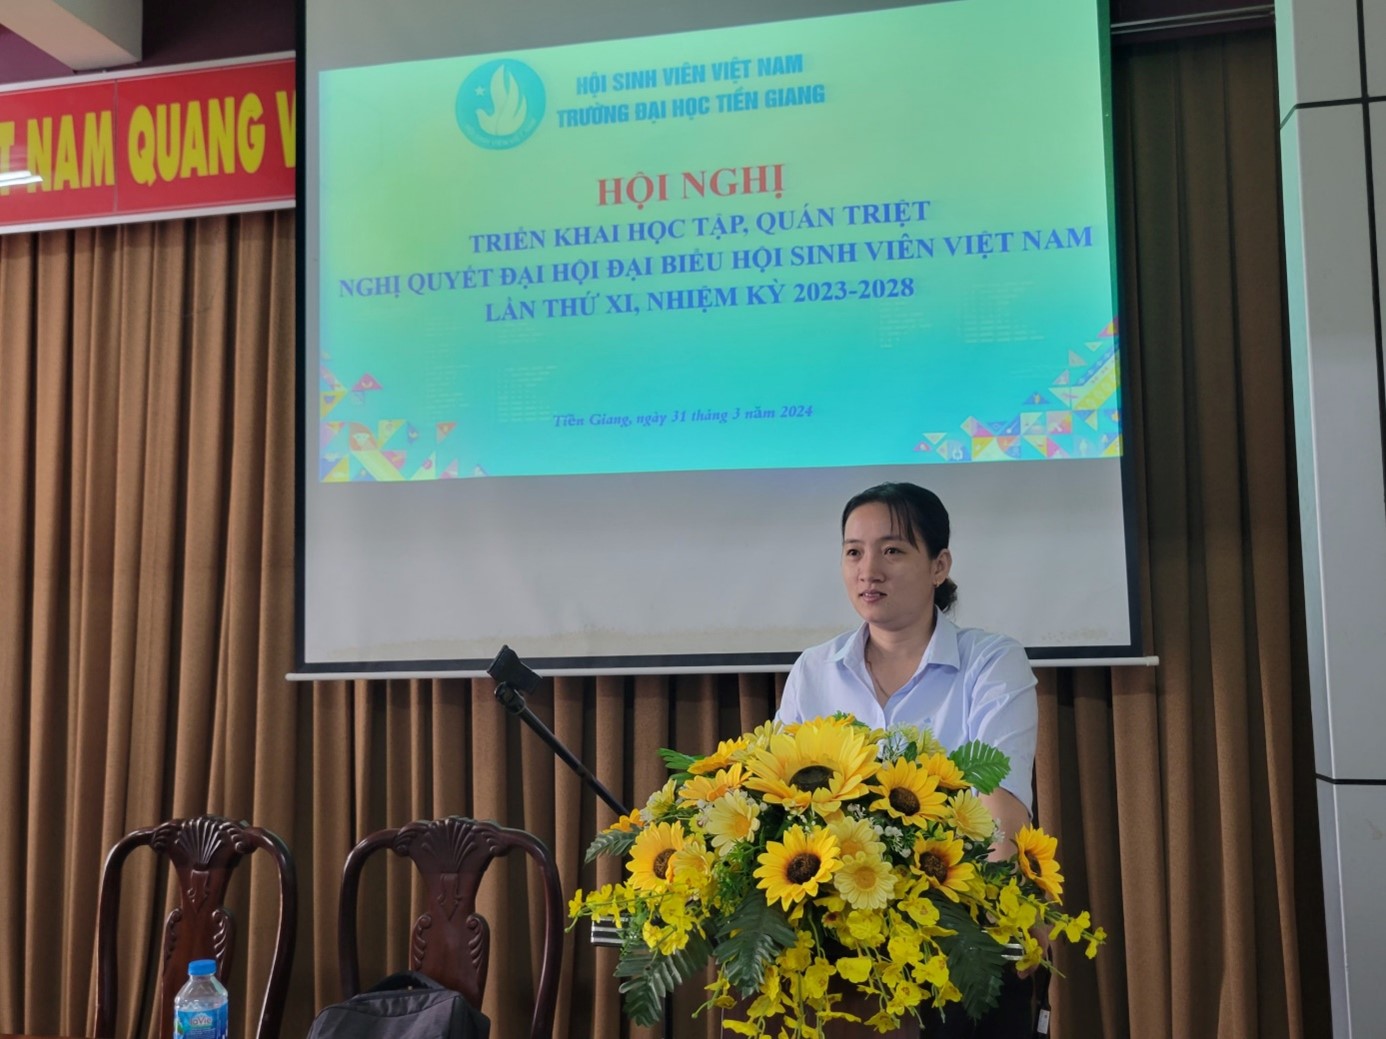 Hội nghị triển khai học tập, quán triệt Nghị quyết Đại hội đại biểu toàn quốc Hội Sinh viên Việt Nam lần thứ XI, nhiệm kỳ 2023 - 2028